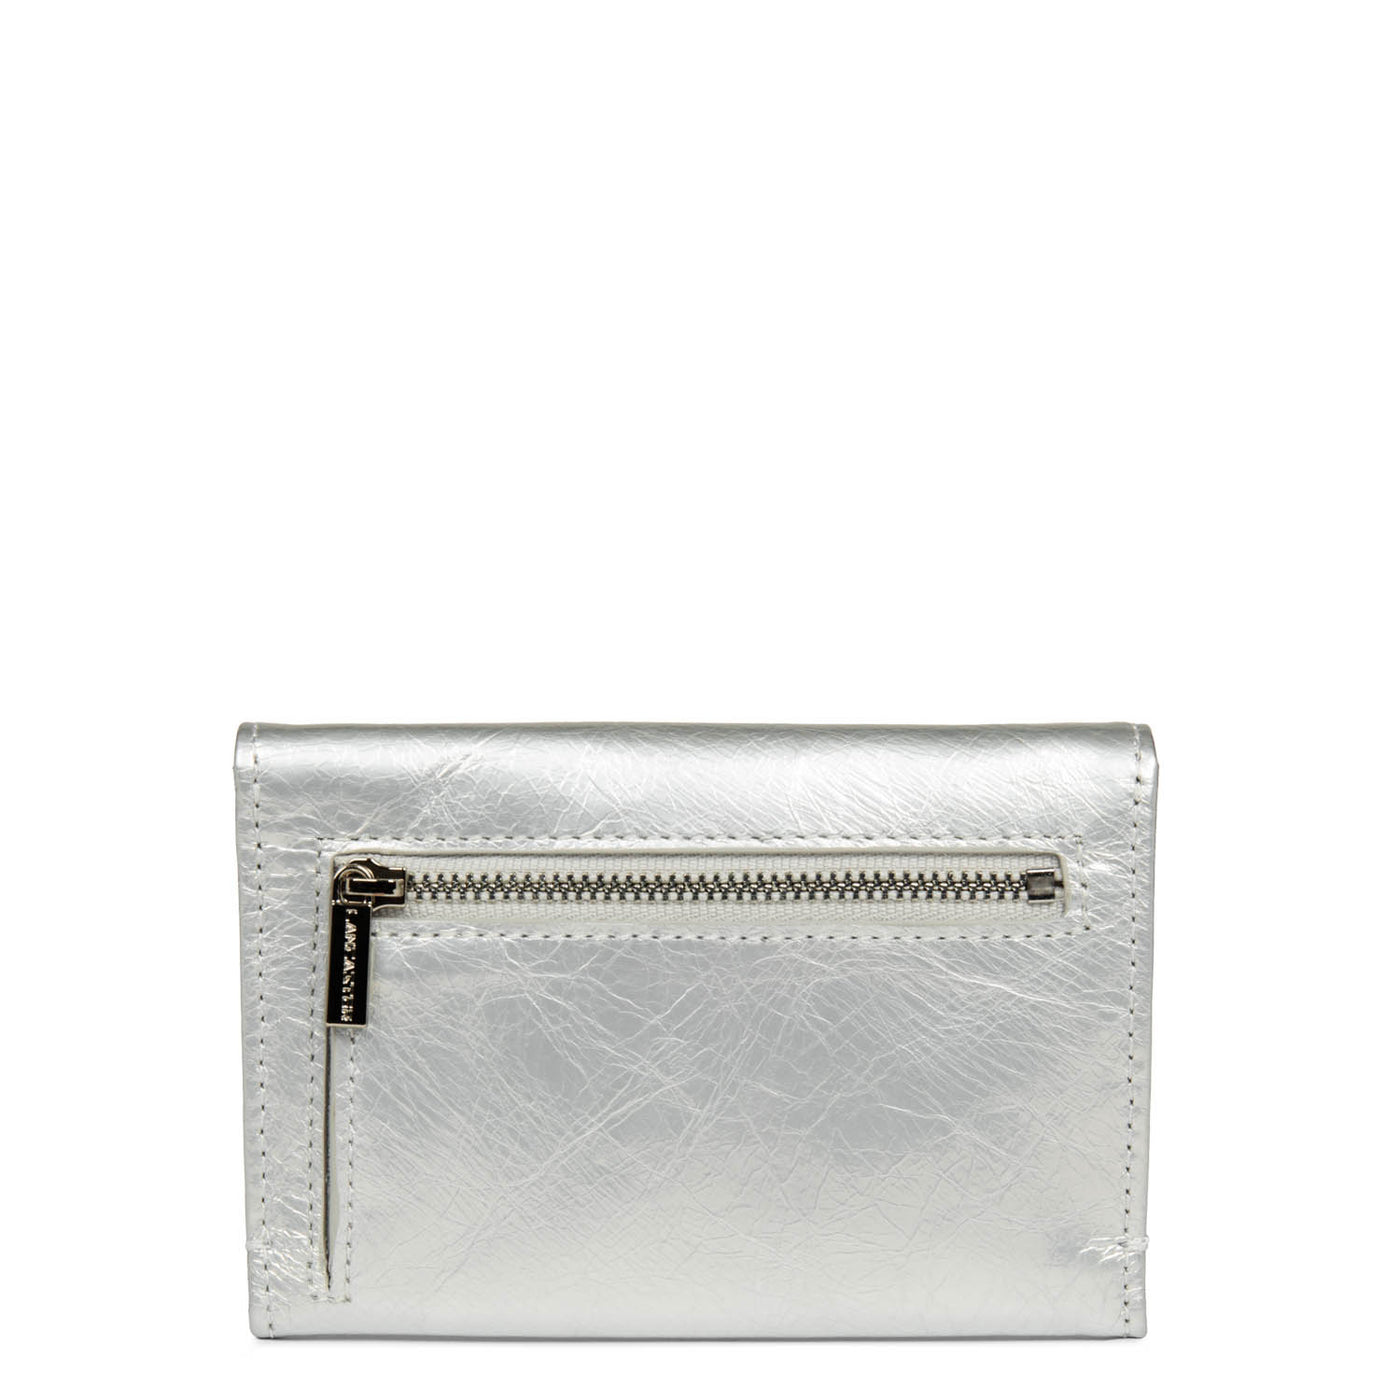 porte-cartes - rétro & glam #couleur_blanc-nacr